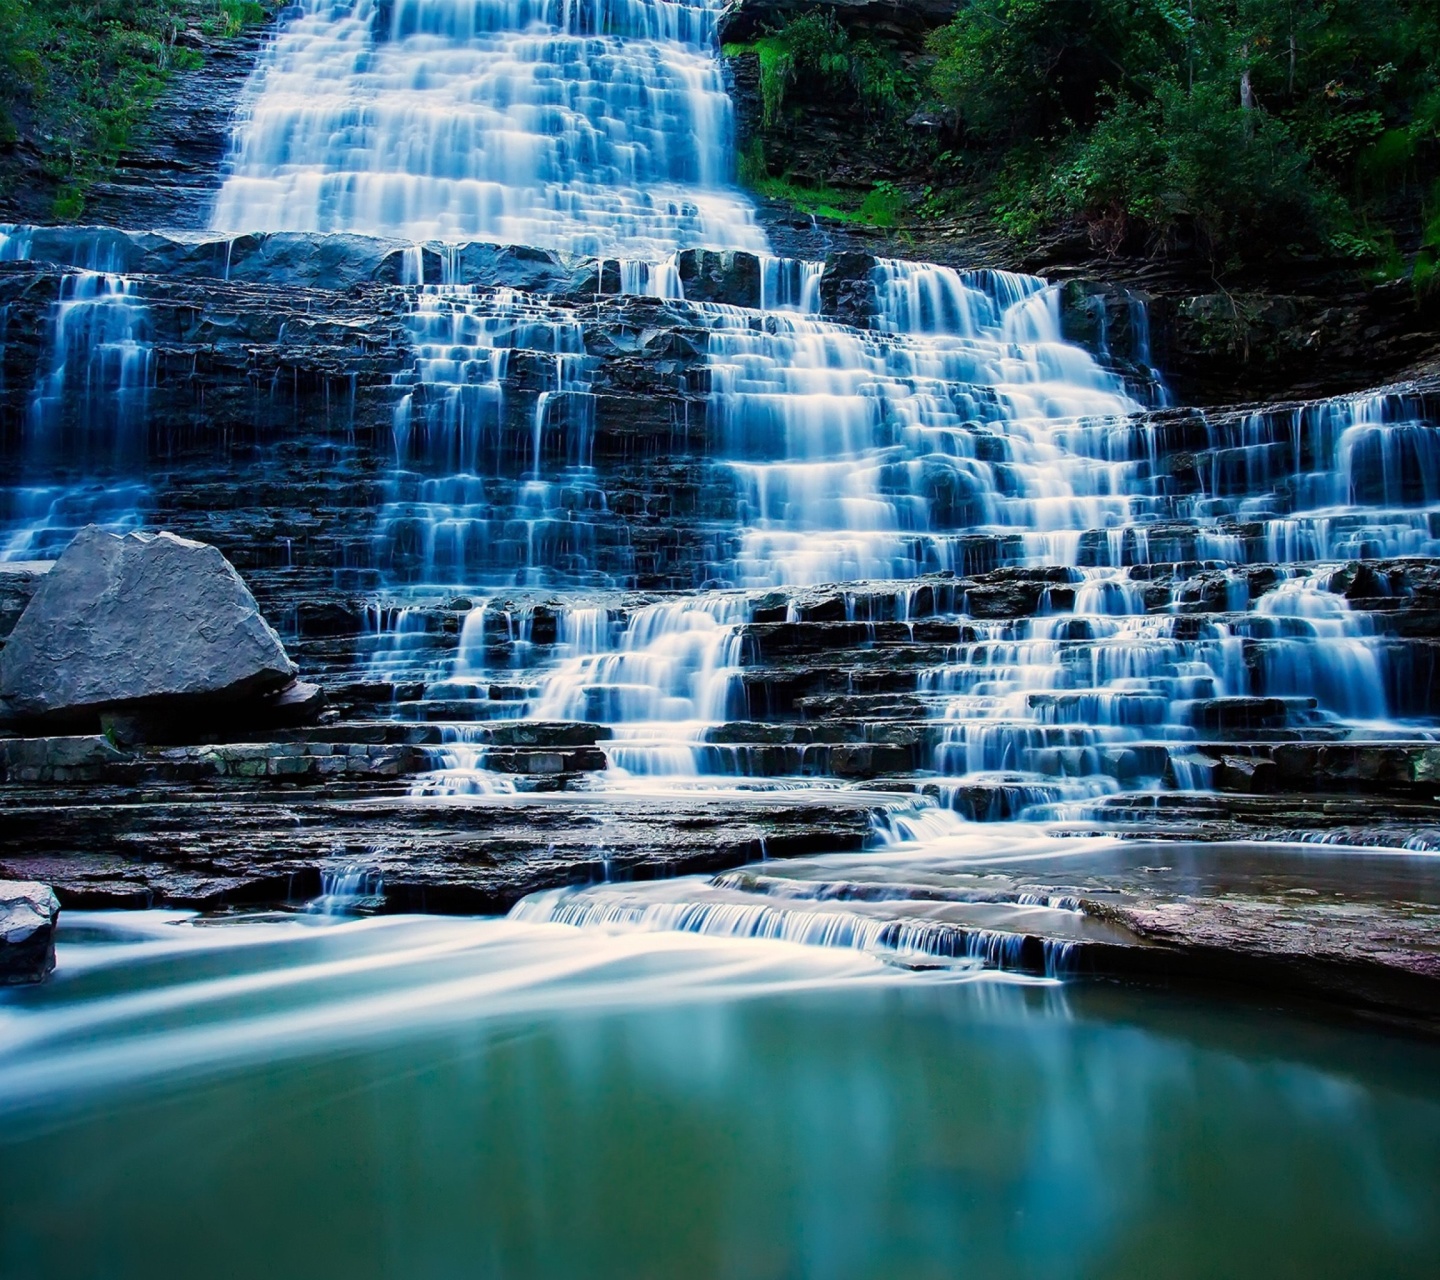 Das Albion Falls cascade waterfall in Hamilton, Ontario, Canada Wallpaper 1440x1280